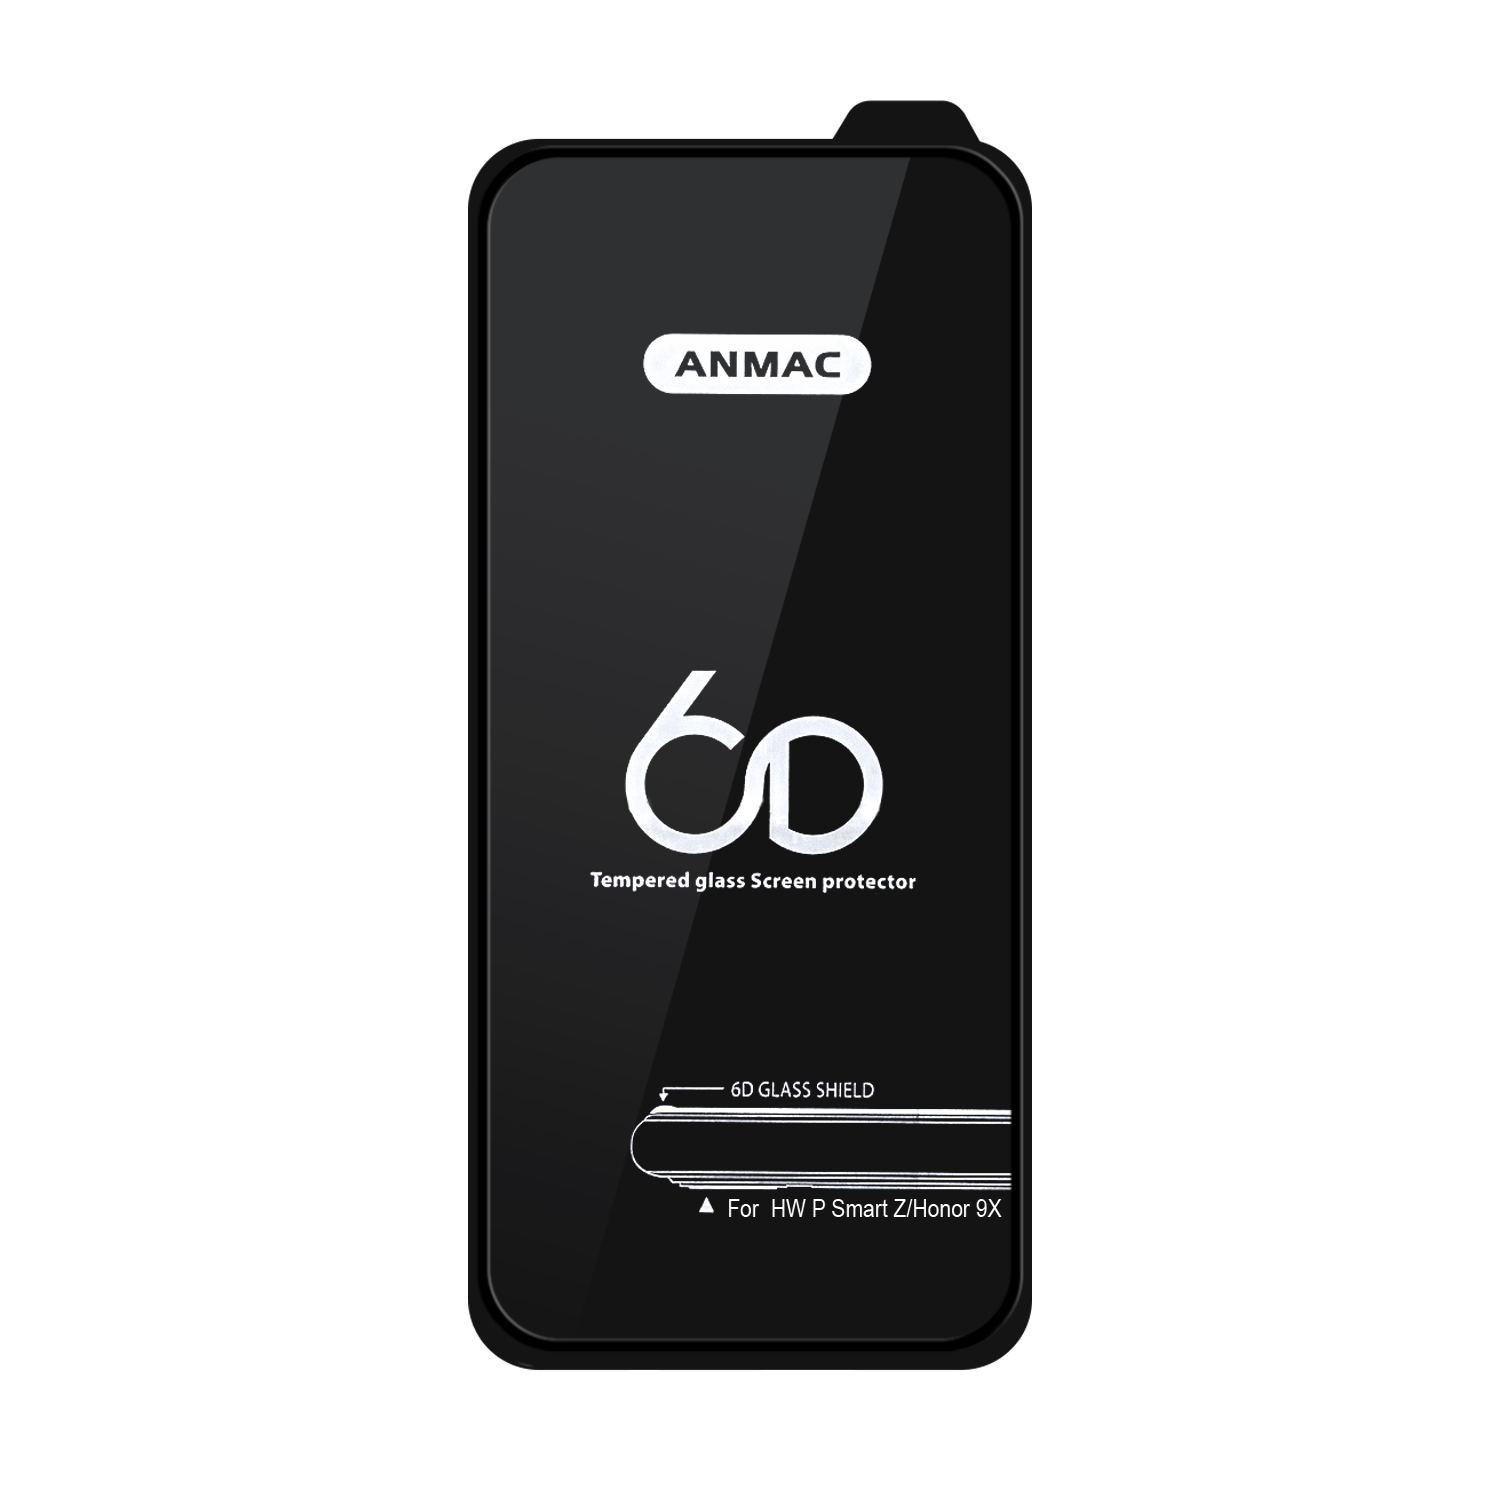 Защитное стекло Huawei P Smart Z/Honor 9X Anmac 6D Black без упаковки Арт.1137145